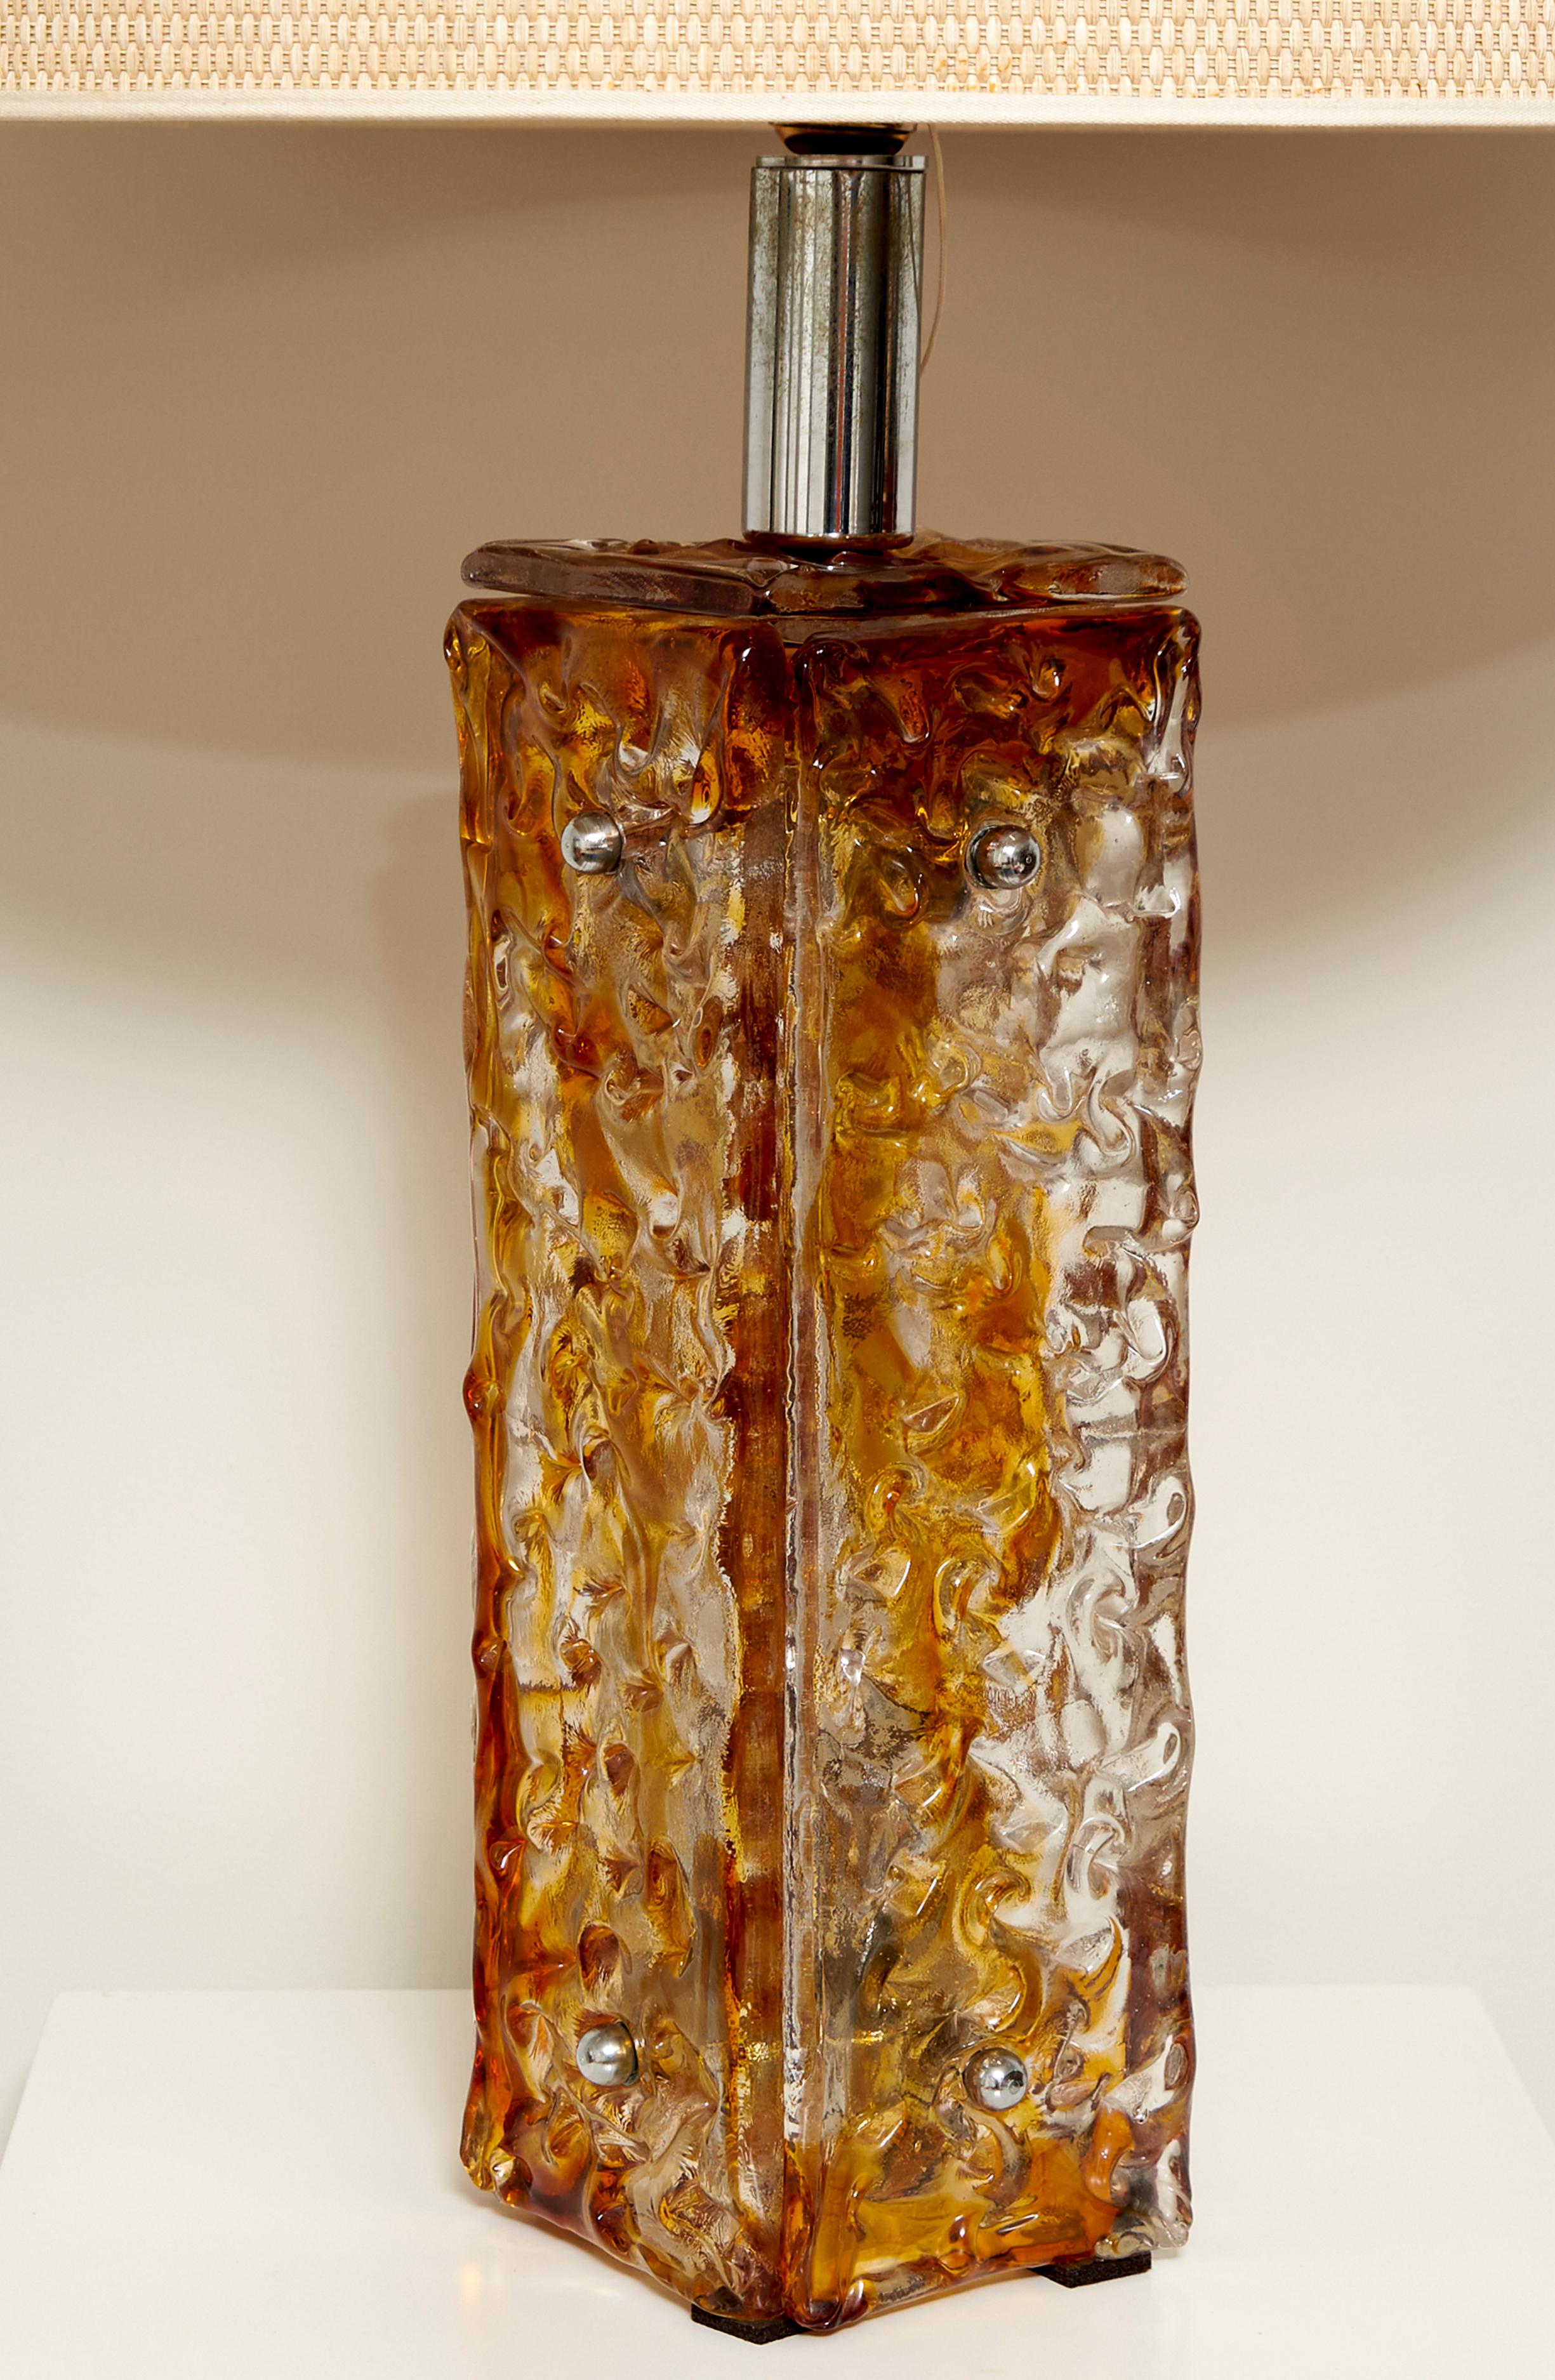 Lampe de table grand format de designer anonyme en verre de Murano et acier chromé. Italie, 1970

La base est structurée en quatre dalles à la texture organique et à la teinte brun-orange vissée à une structure métallique. L'intérieur du socle peut